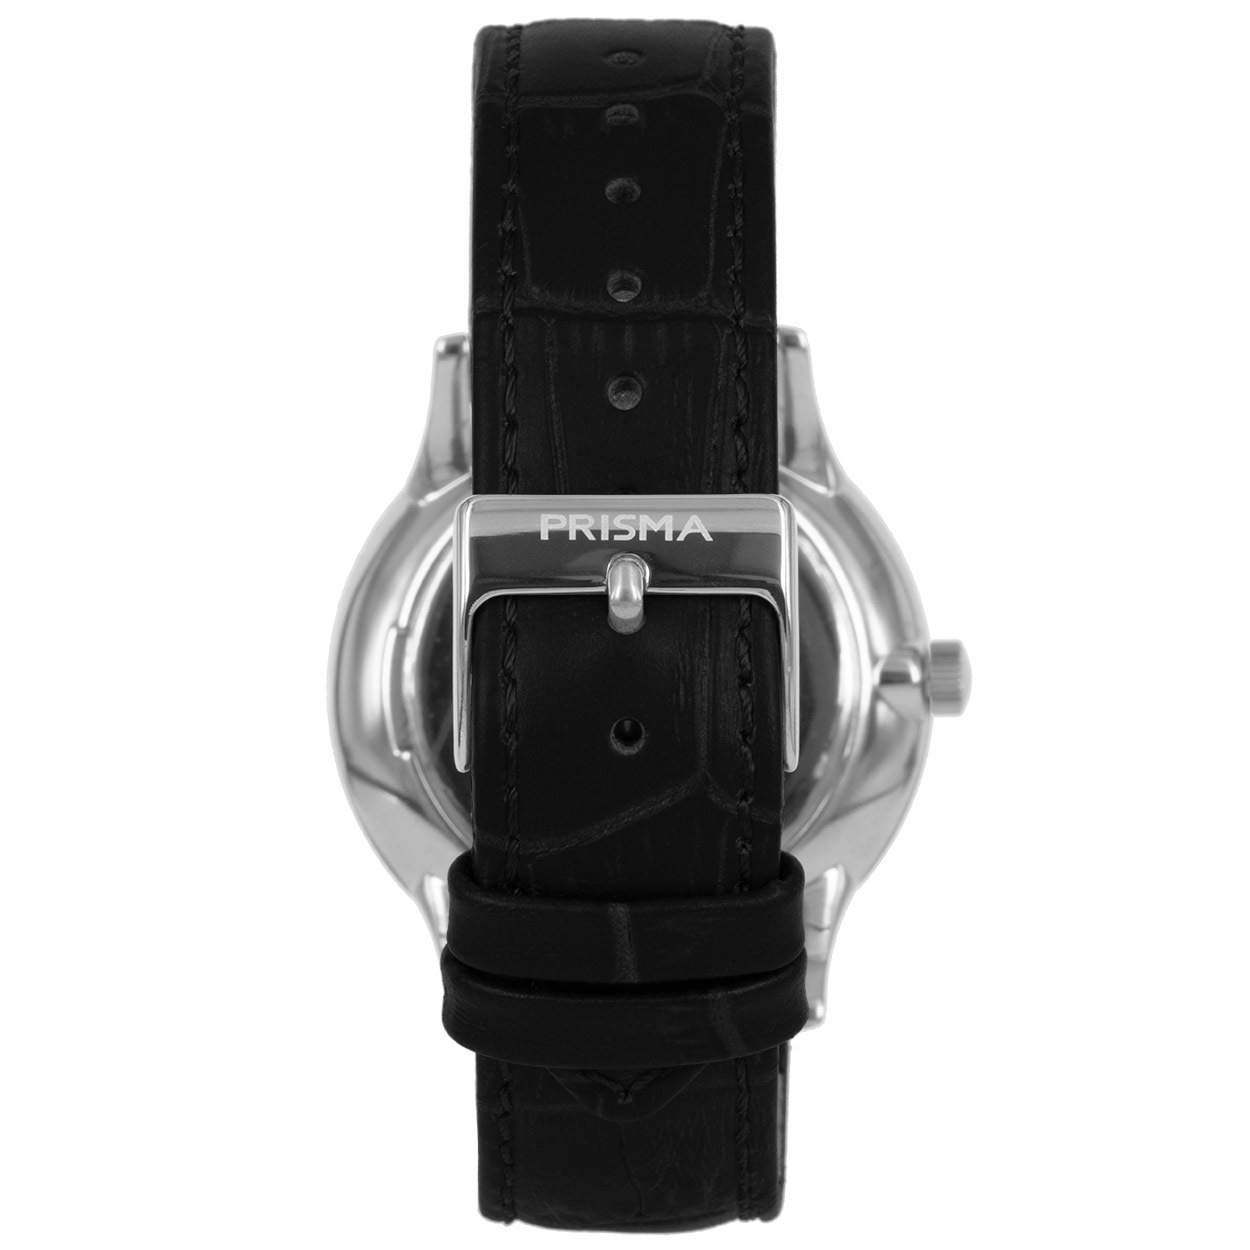 prisma-p1630-heren-horloge-zwart-edelstaal-carbon-achterkant